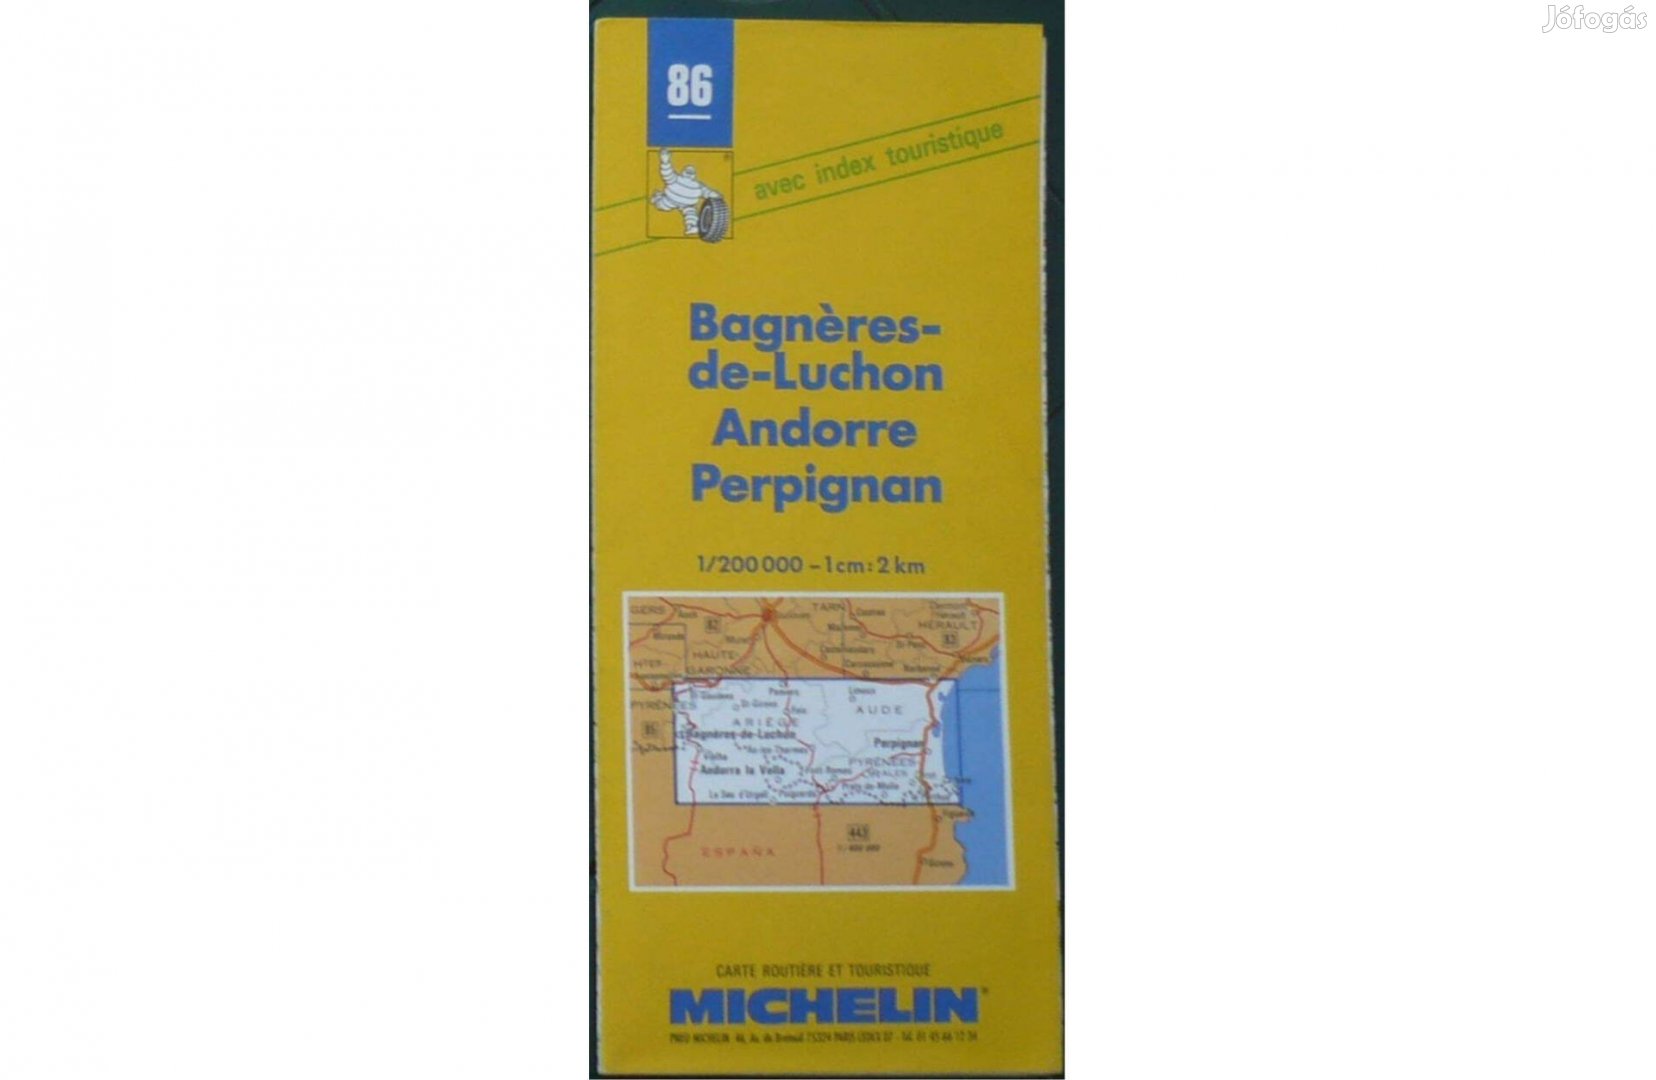 Franciaország Michelin 86. térkép Bogneres-de Luchon-Andorre-Perpignan